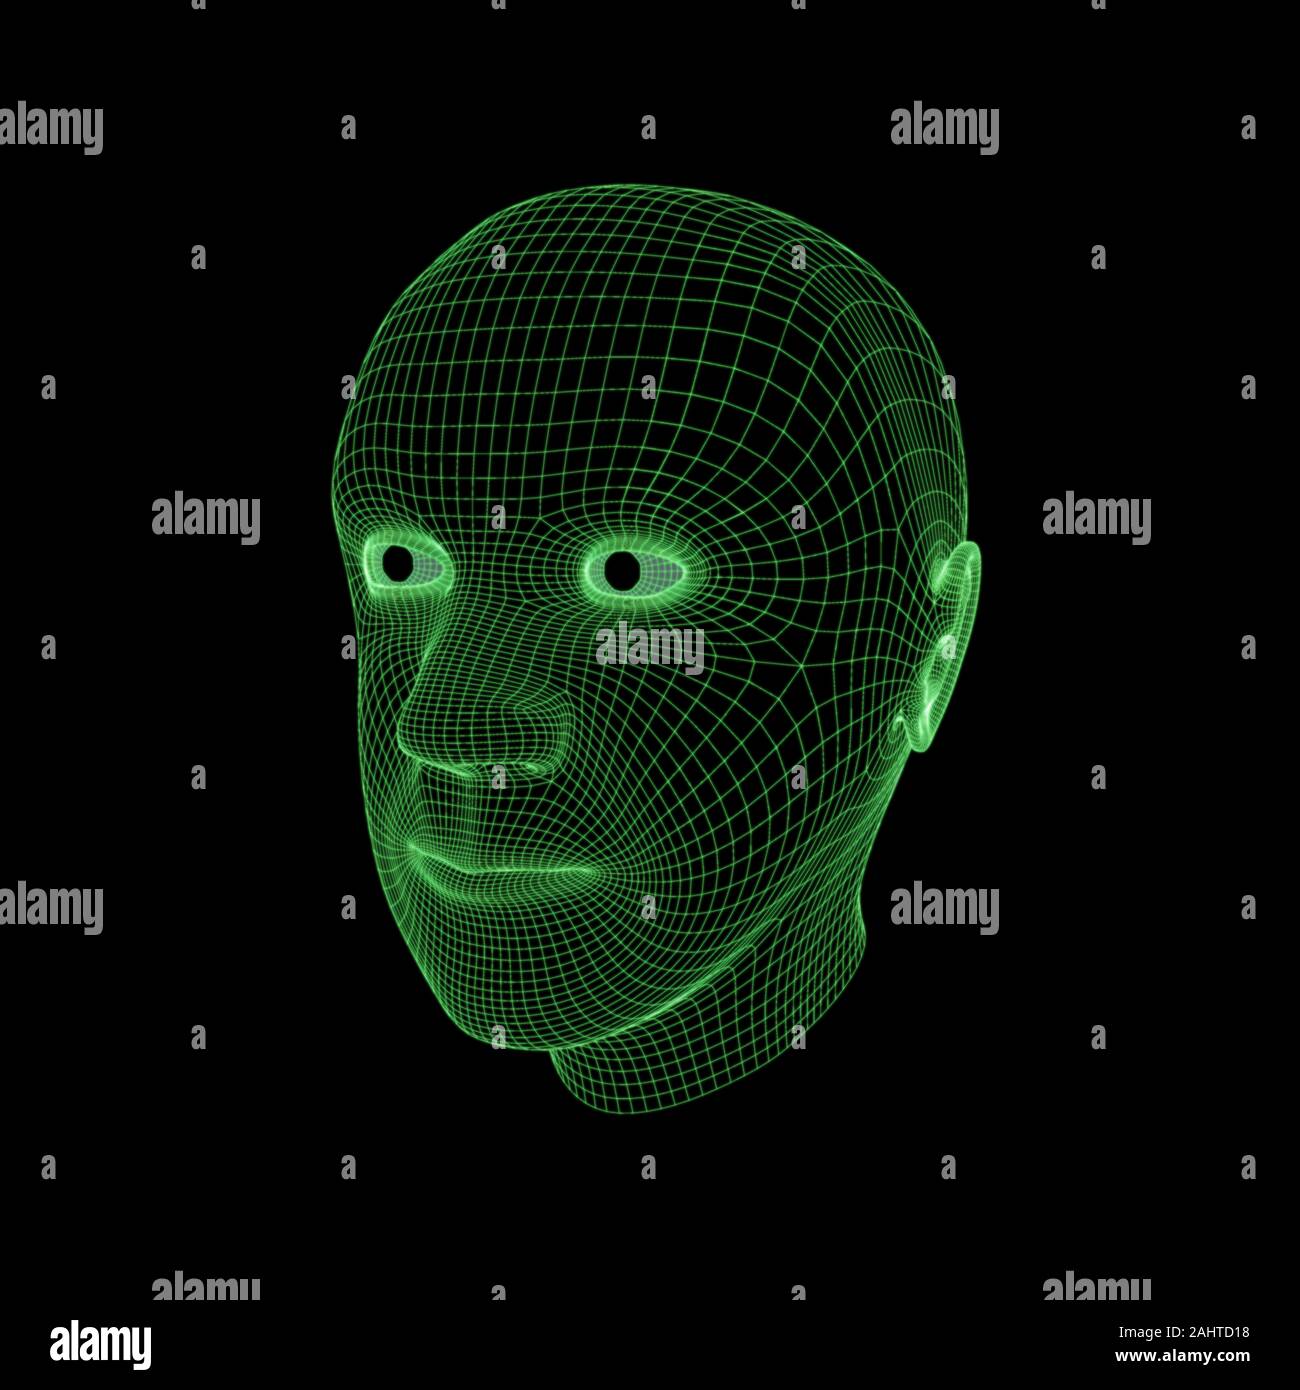 Le fil vert frame rendering de la tête d'un homme contre un fond noir Banque D'Images